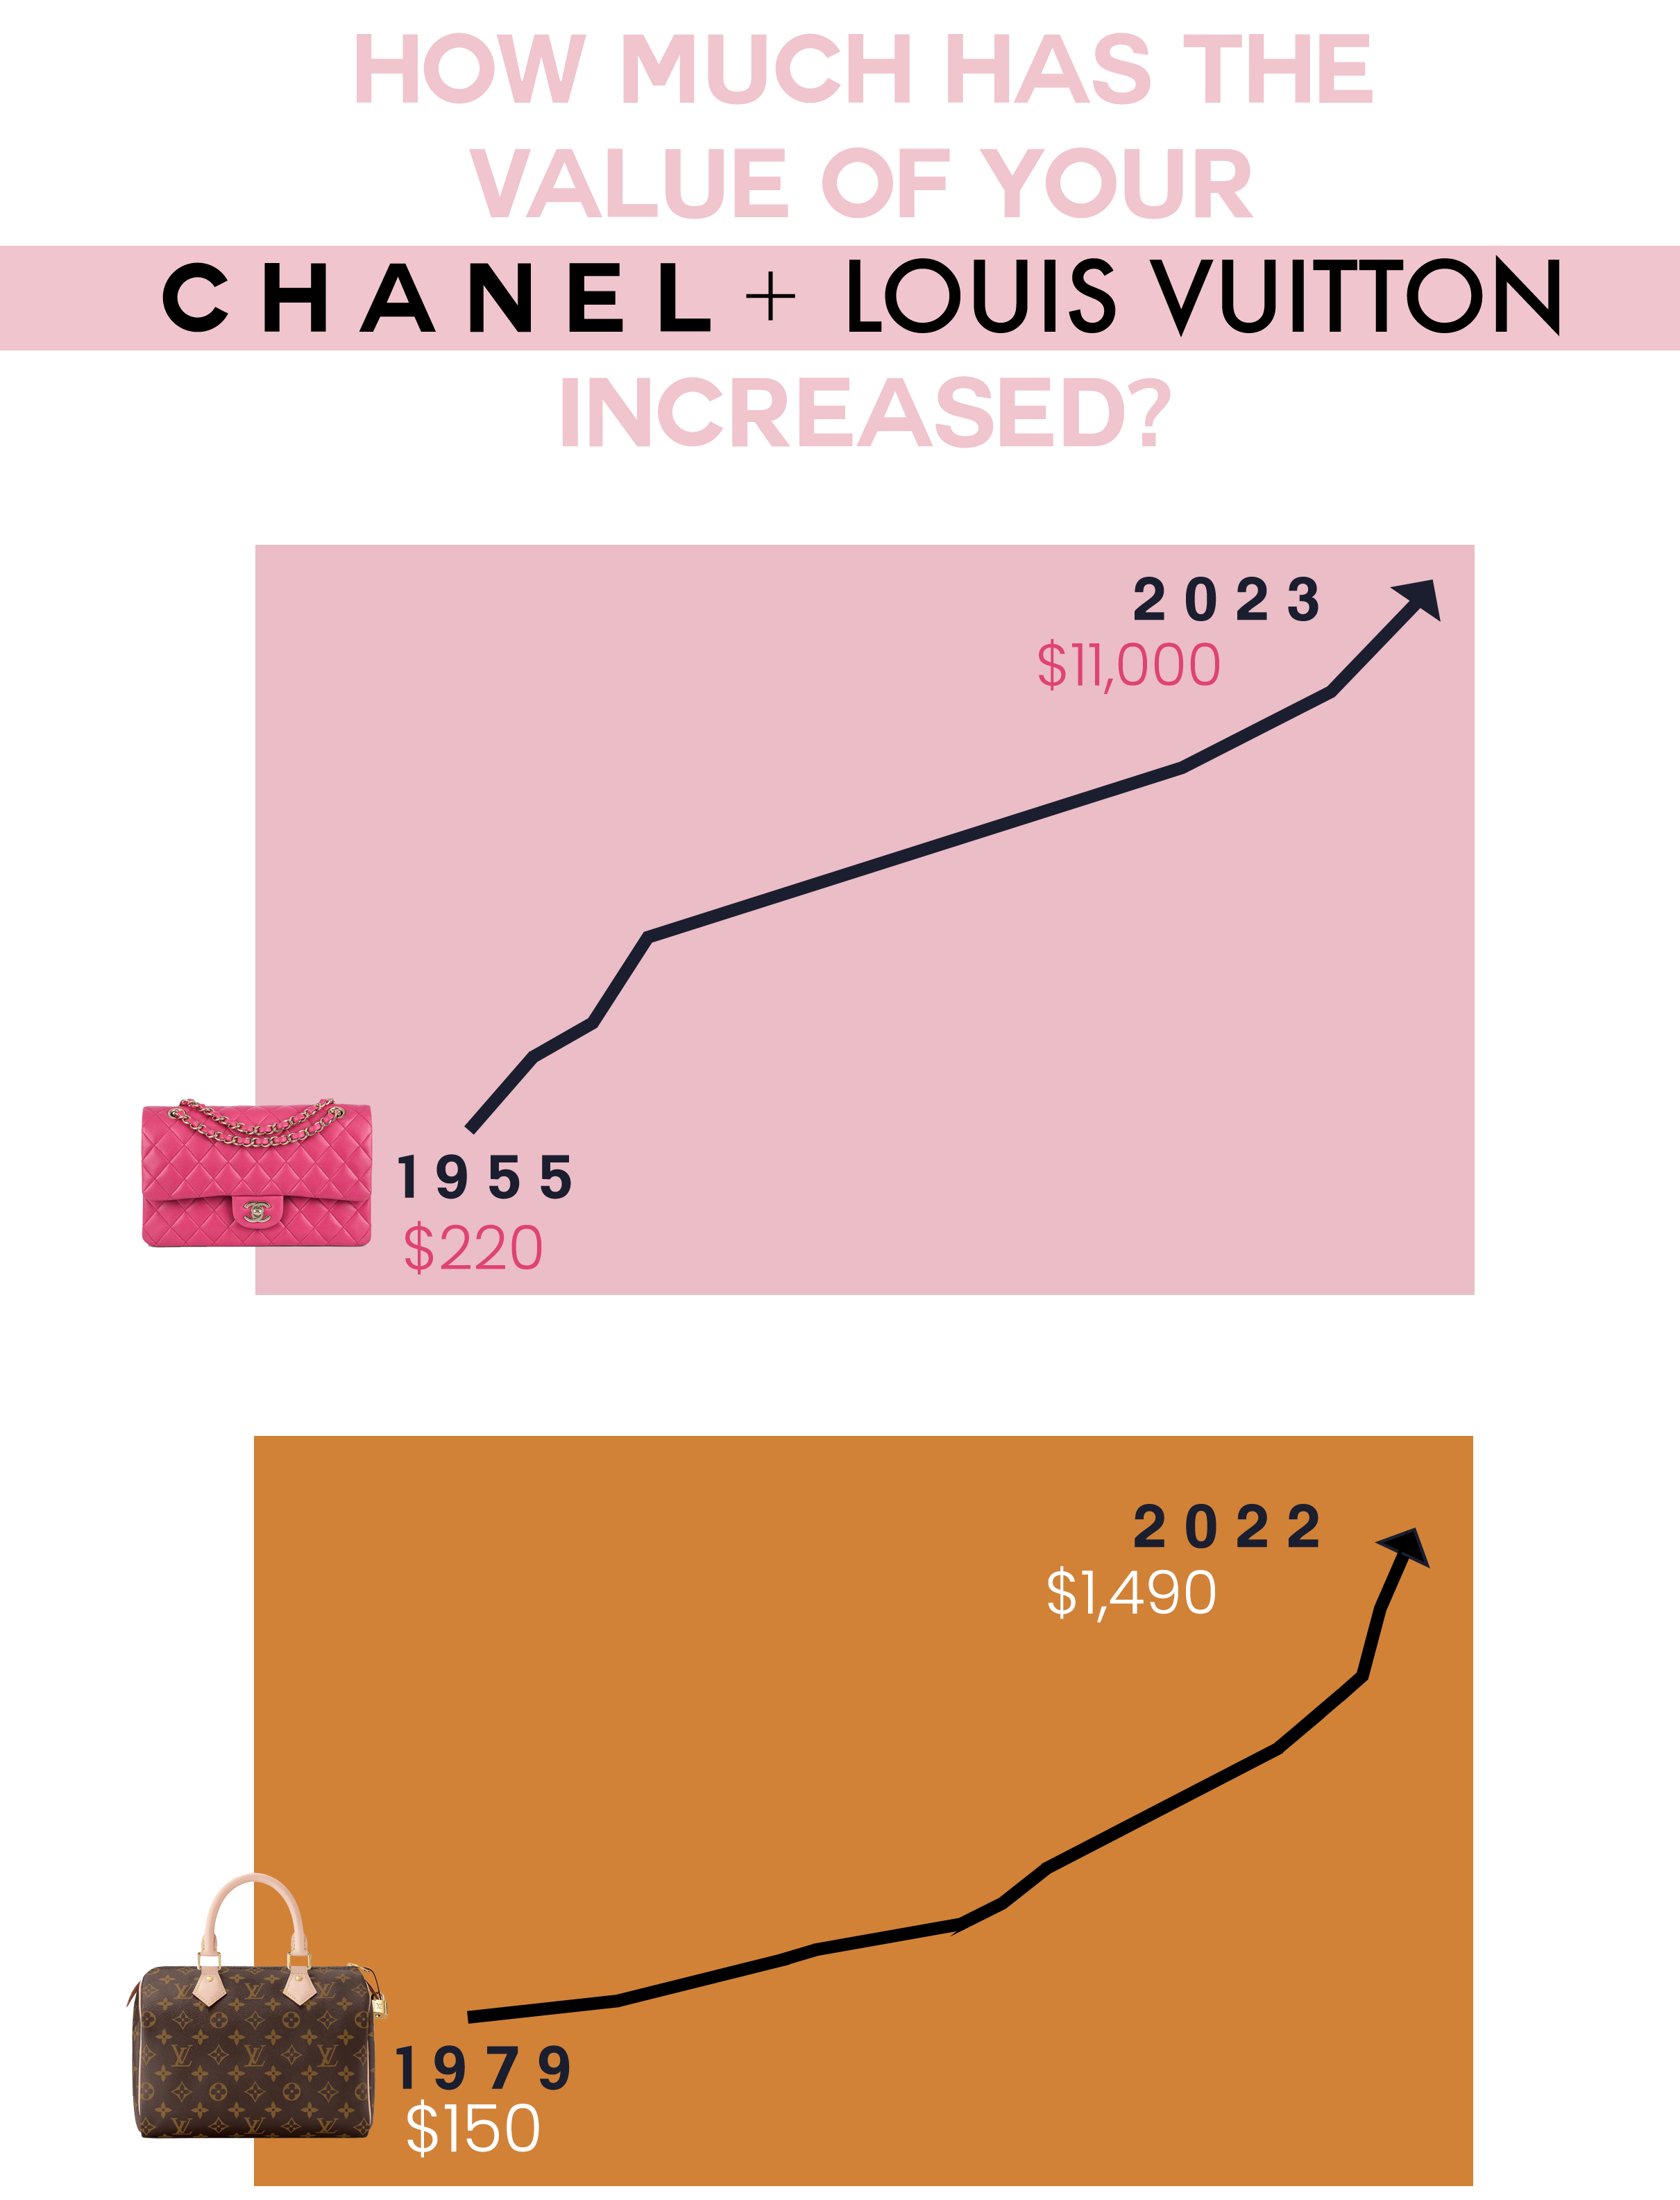 Breaking News: International Chanel Price Increase – Havre de Luxe